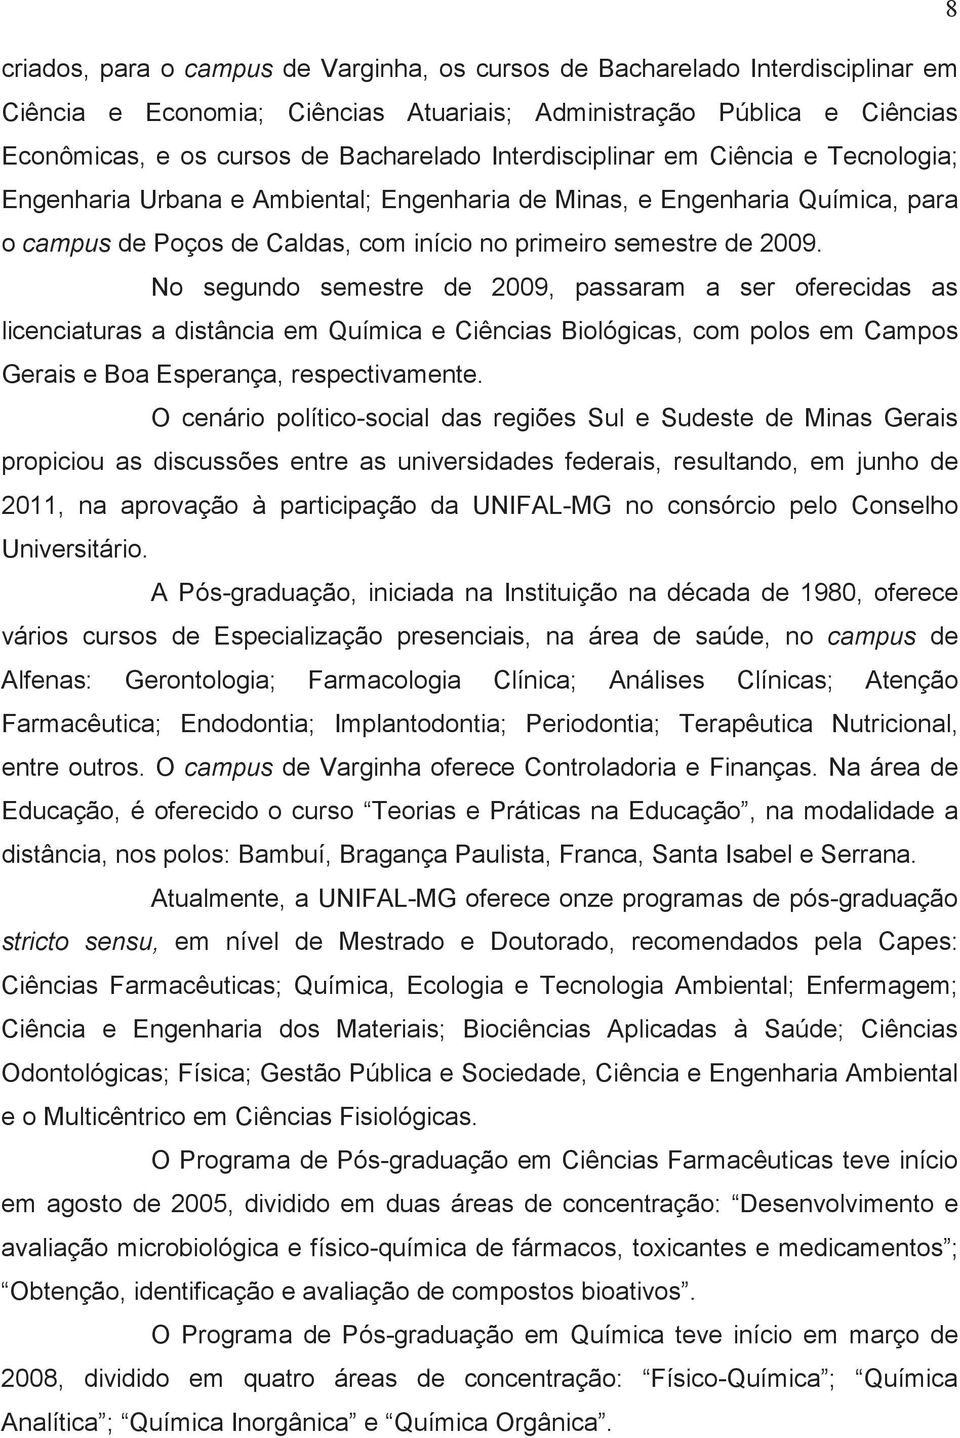 No segundo semestre de 2009, passaram a ser oferecidas as licenciaturas a distância em Química e Ciências Biológicas, com polos em Campos Gerais e Boa Esperança, respectivamente.